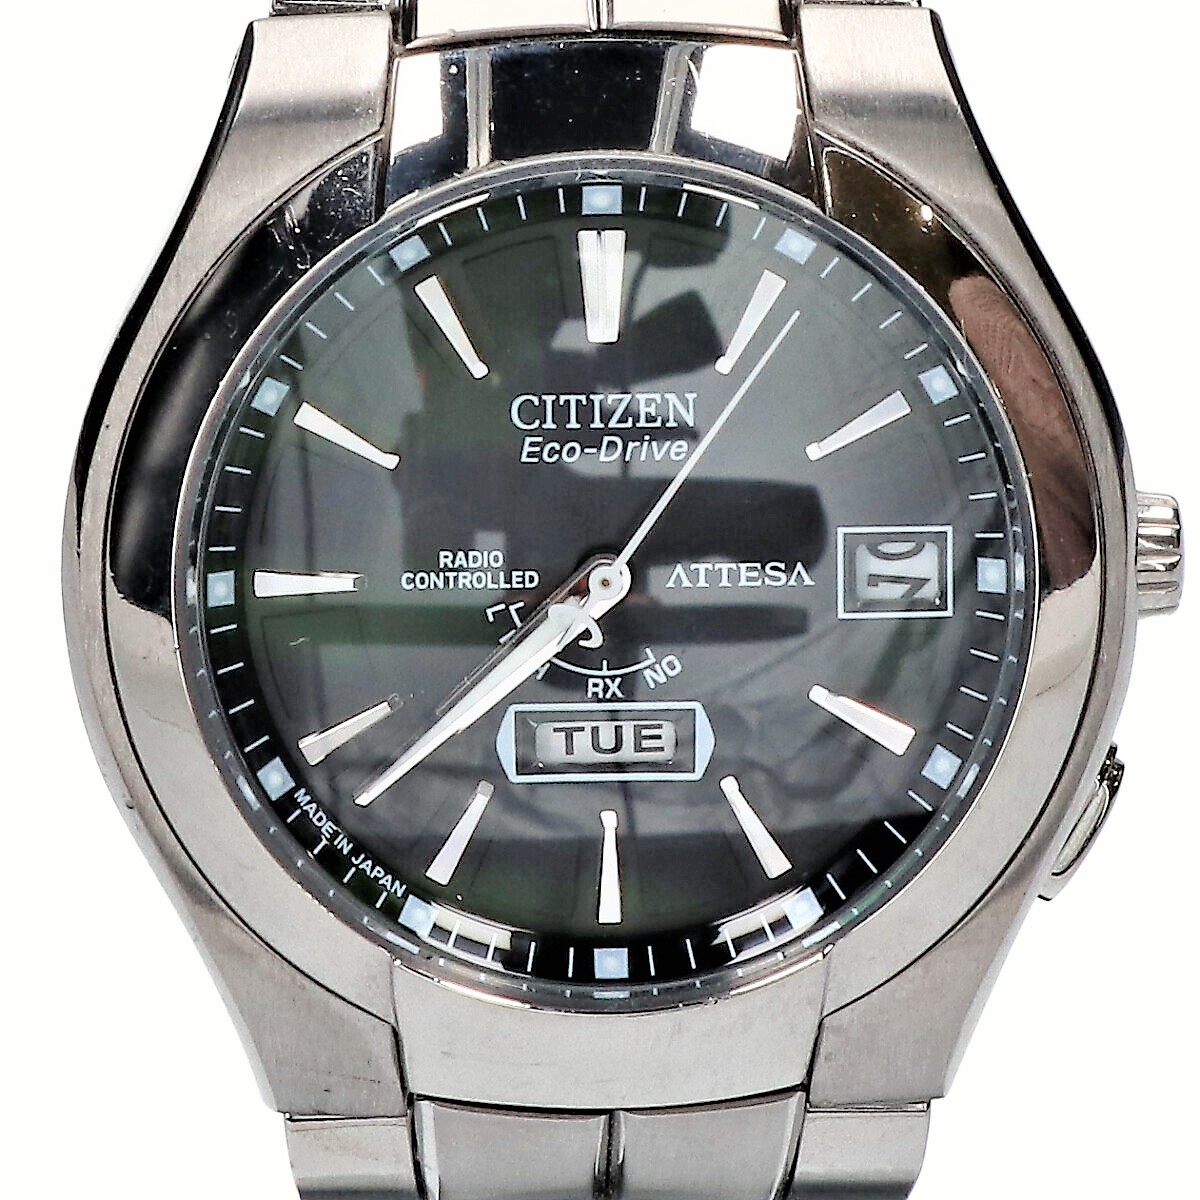 シチズンのATD53-2771 cal.H106 ATTESA アテッサ エコ・ドライブ電波 腕時計の買取実績です。